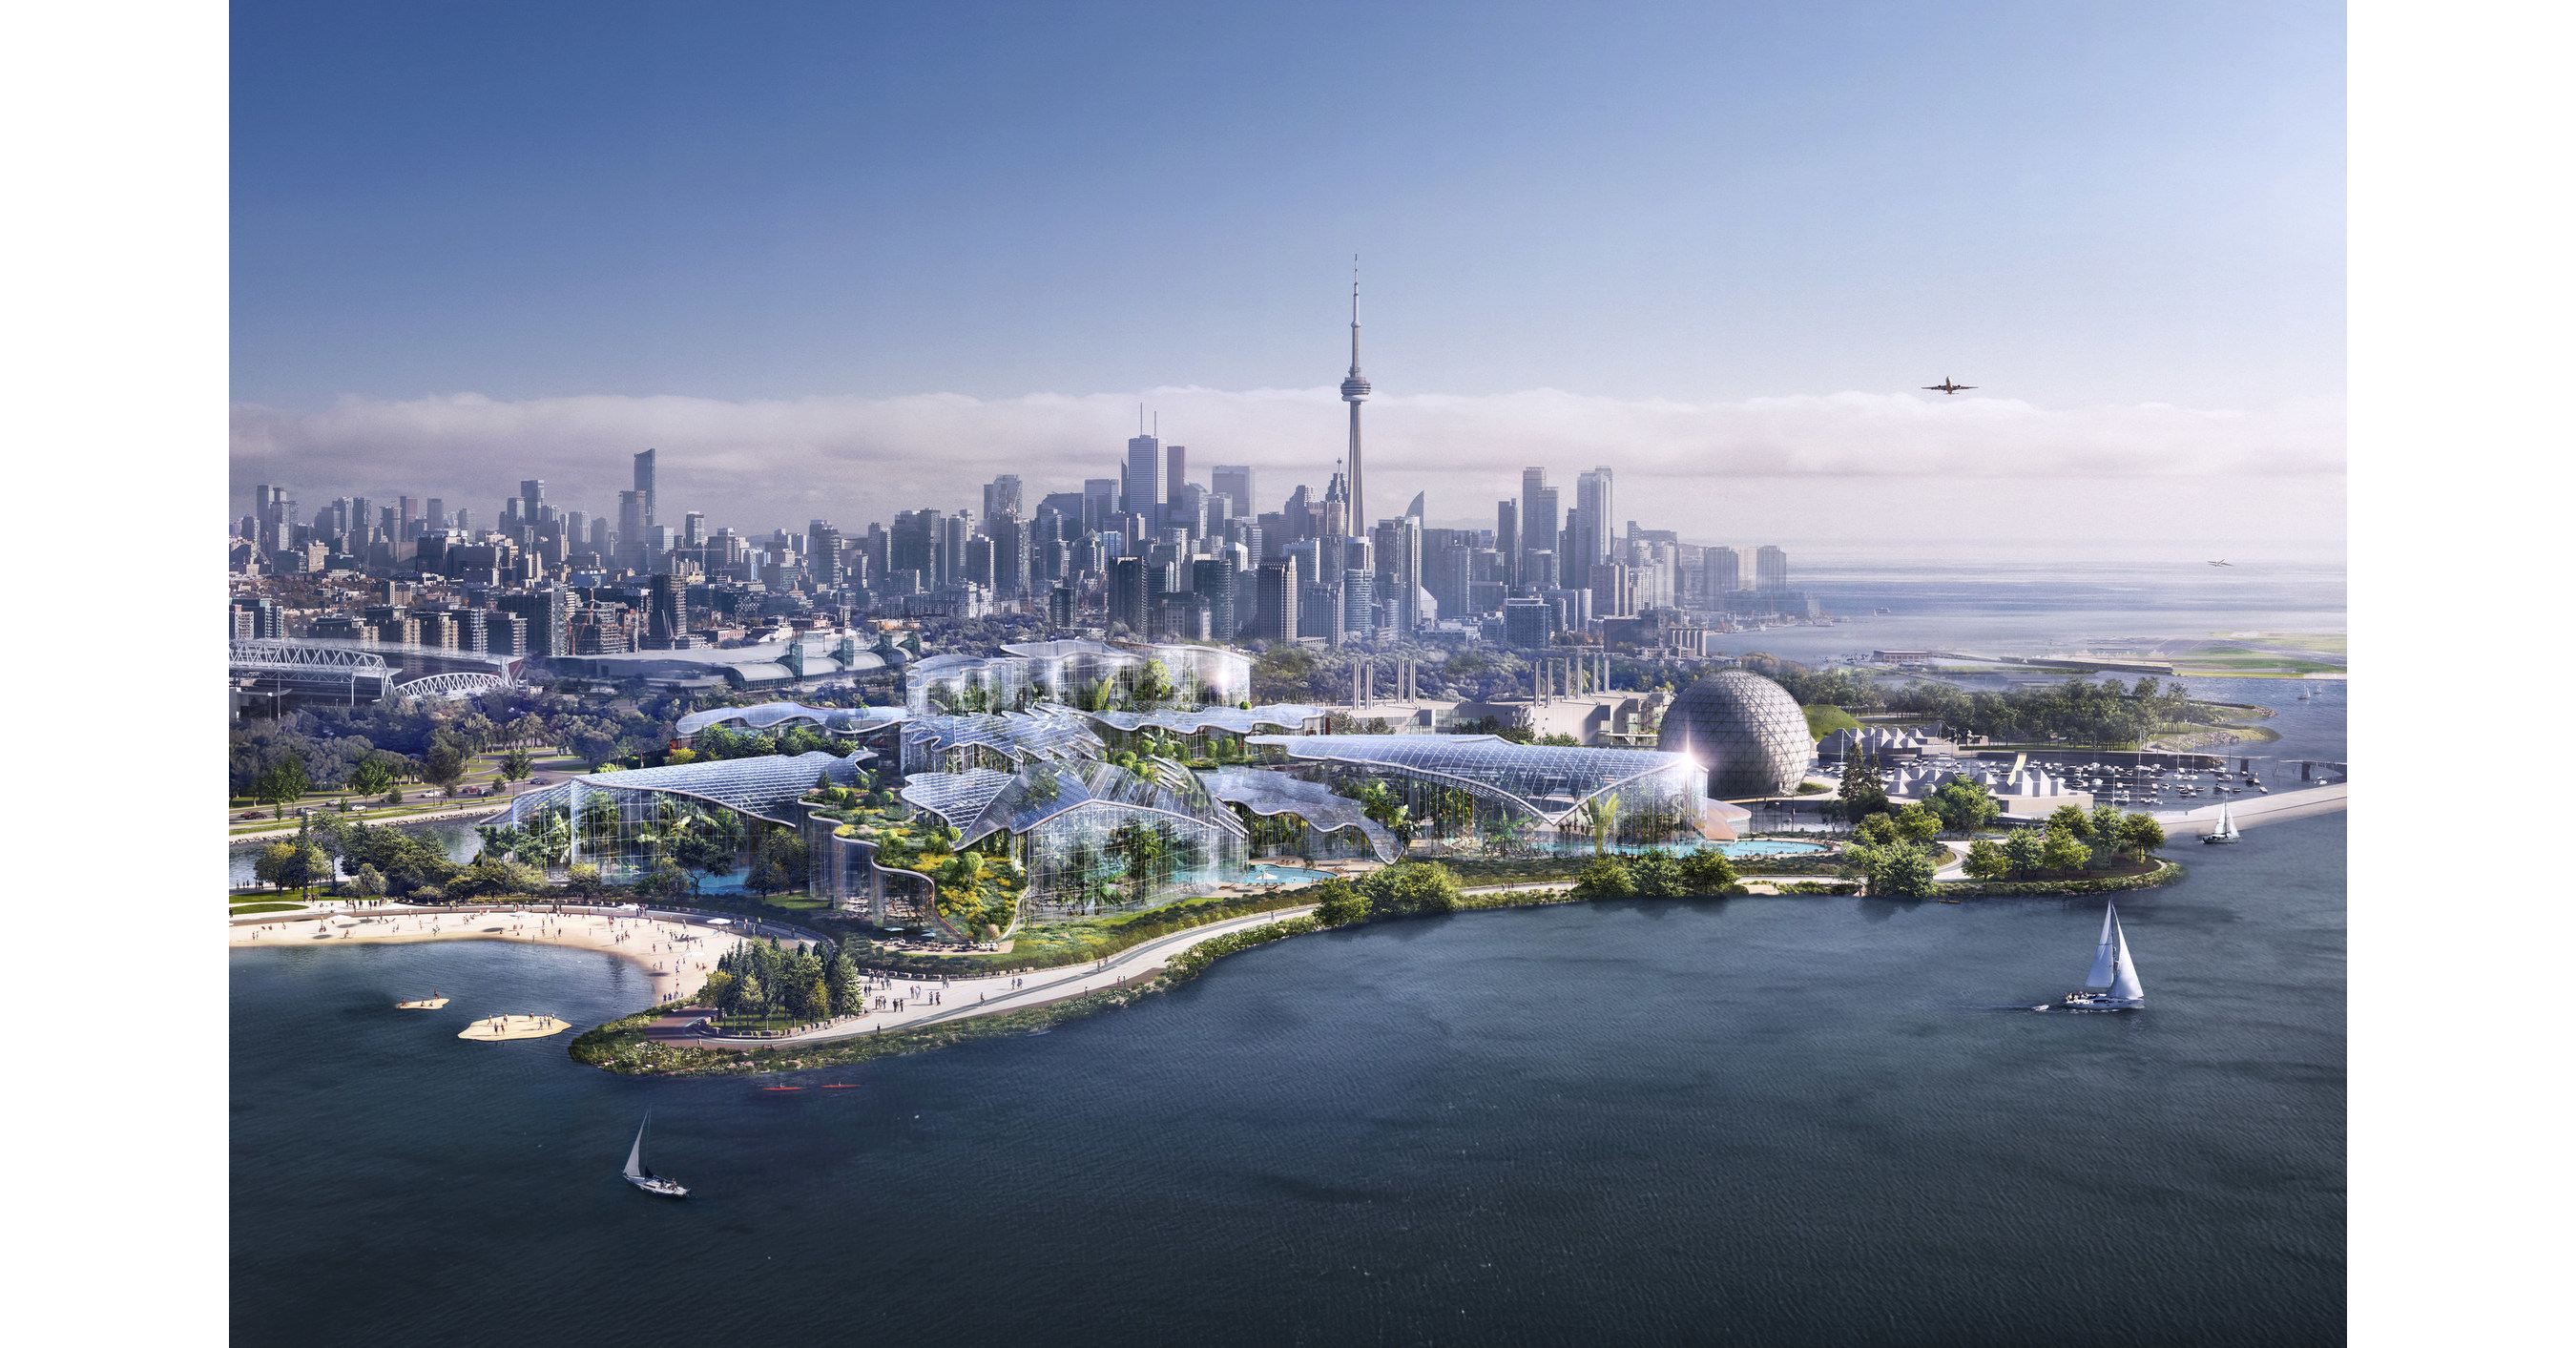 Future of Ontario Place Toronto predstavuje novú destináciu pre voľný čas a luxus od skupiny Therme Group